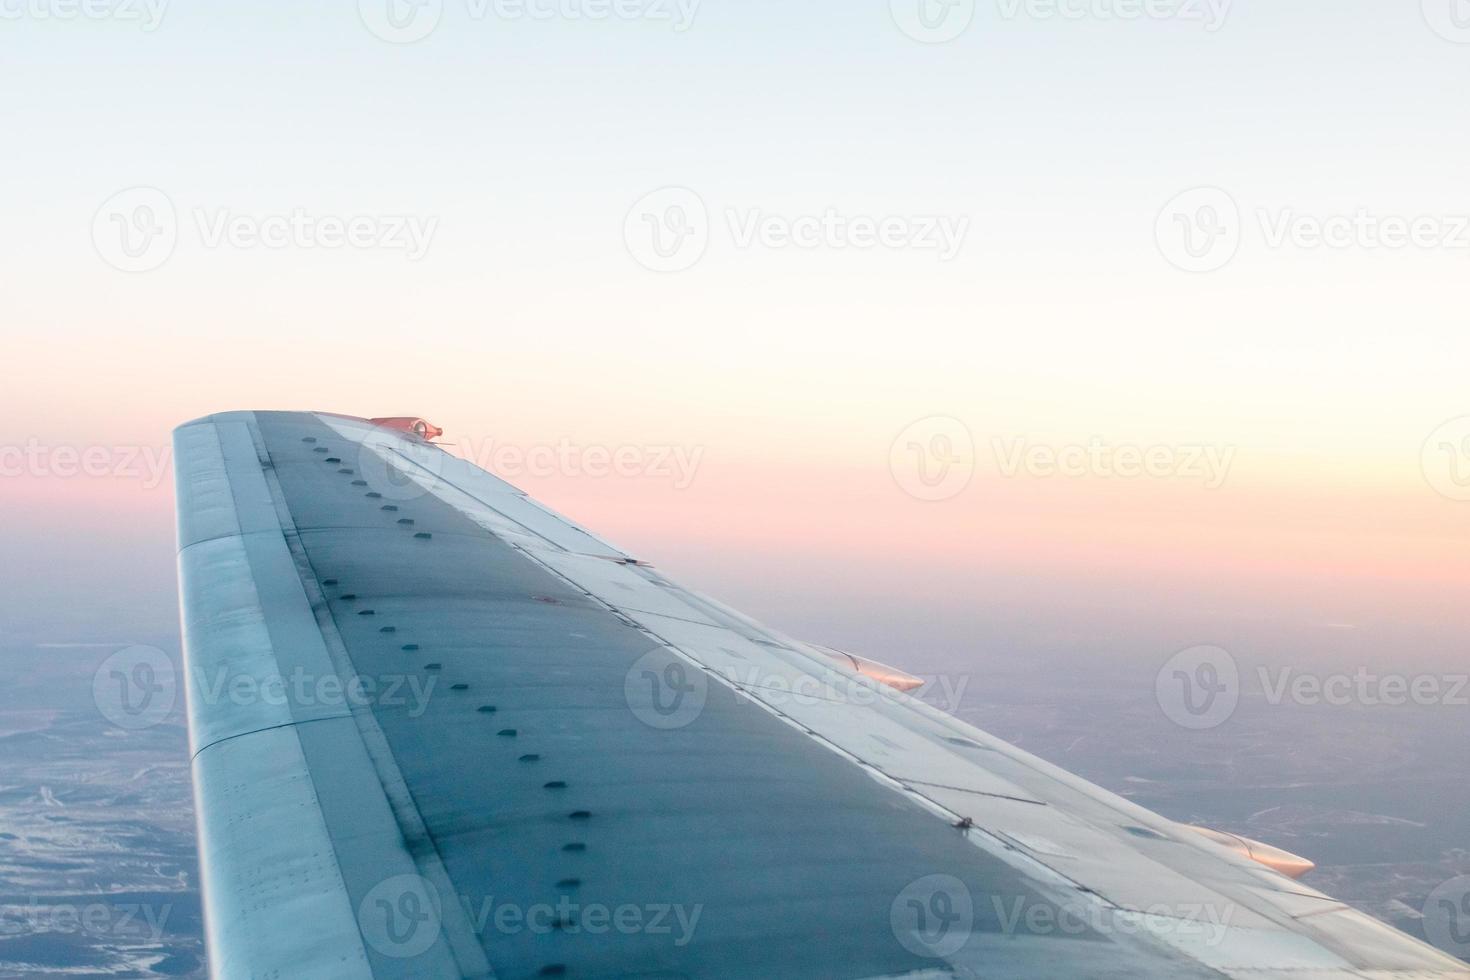 roze zonsondergang van bovenstaande, over- winter terrein en vliegtuig vleugel foto